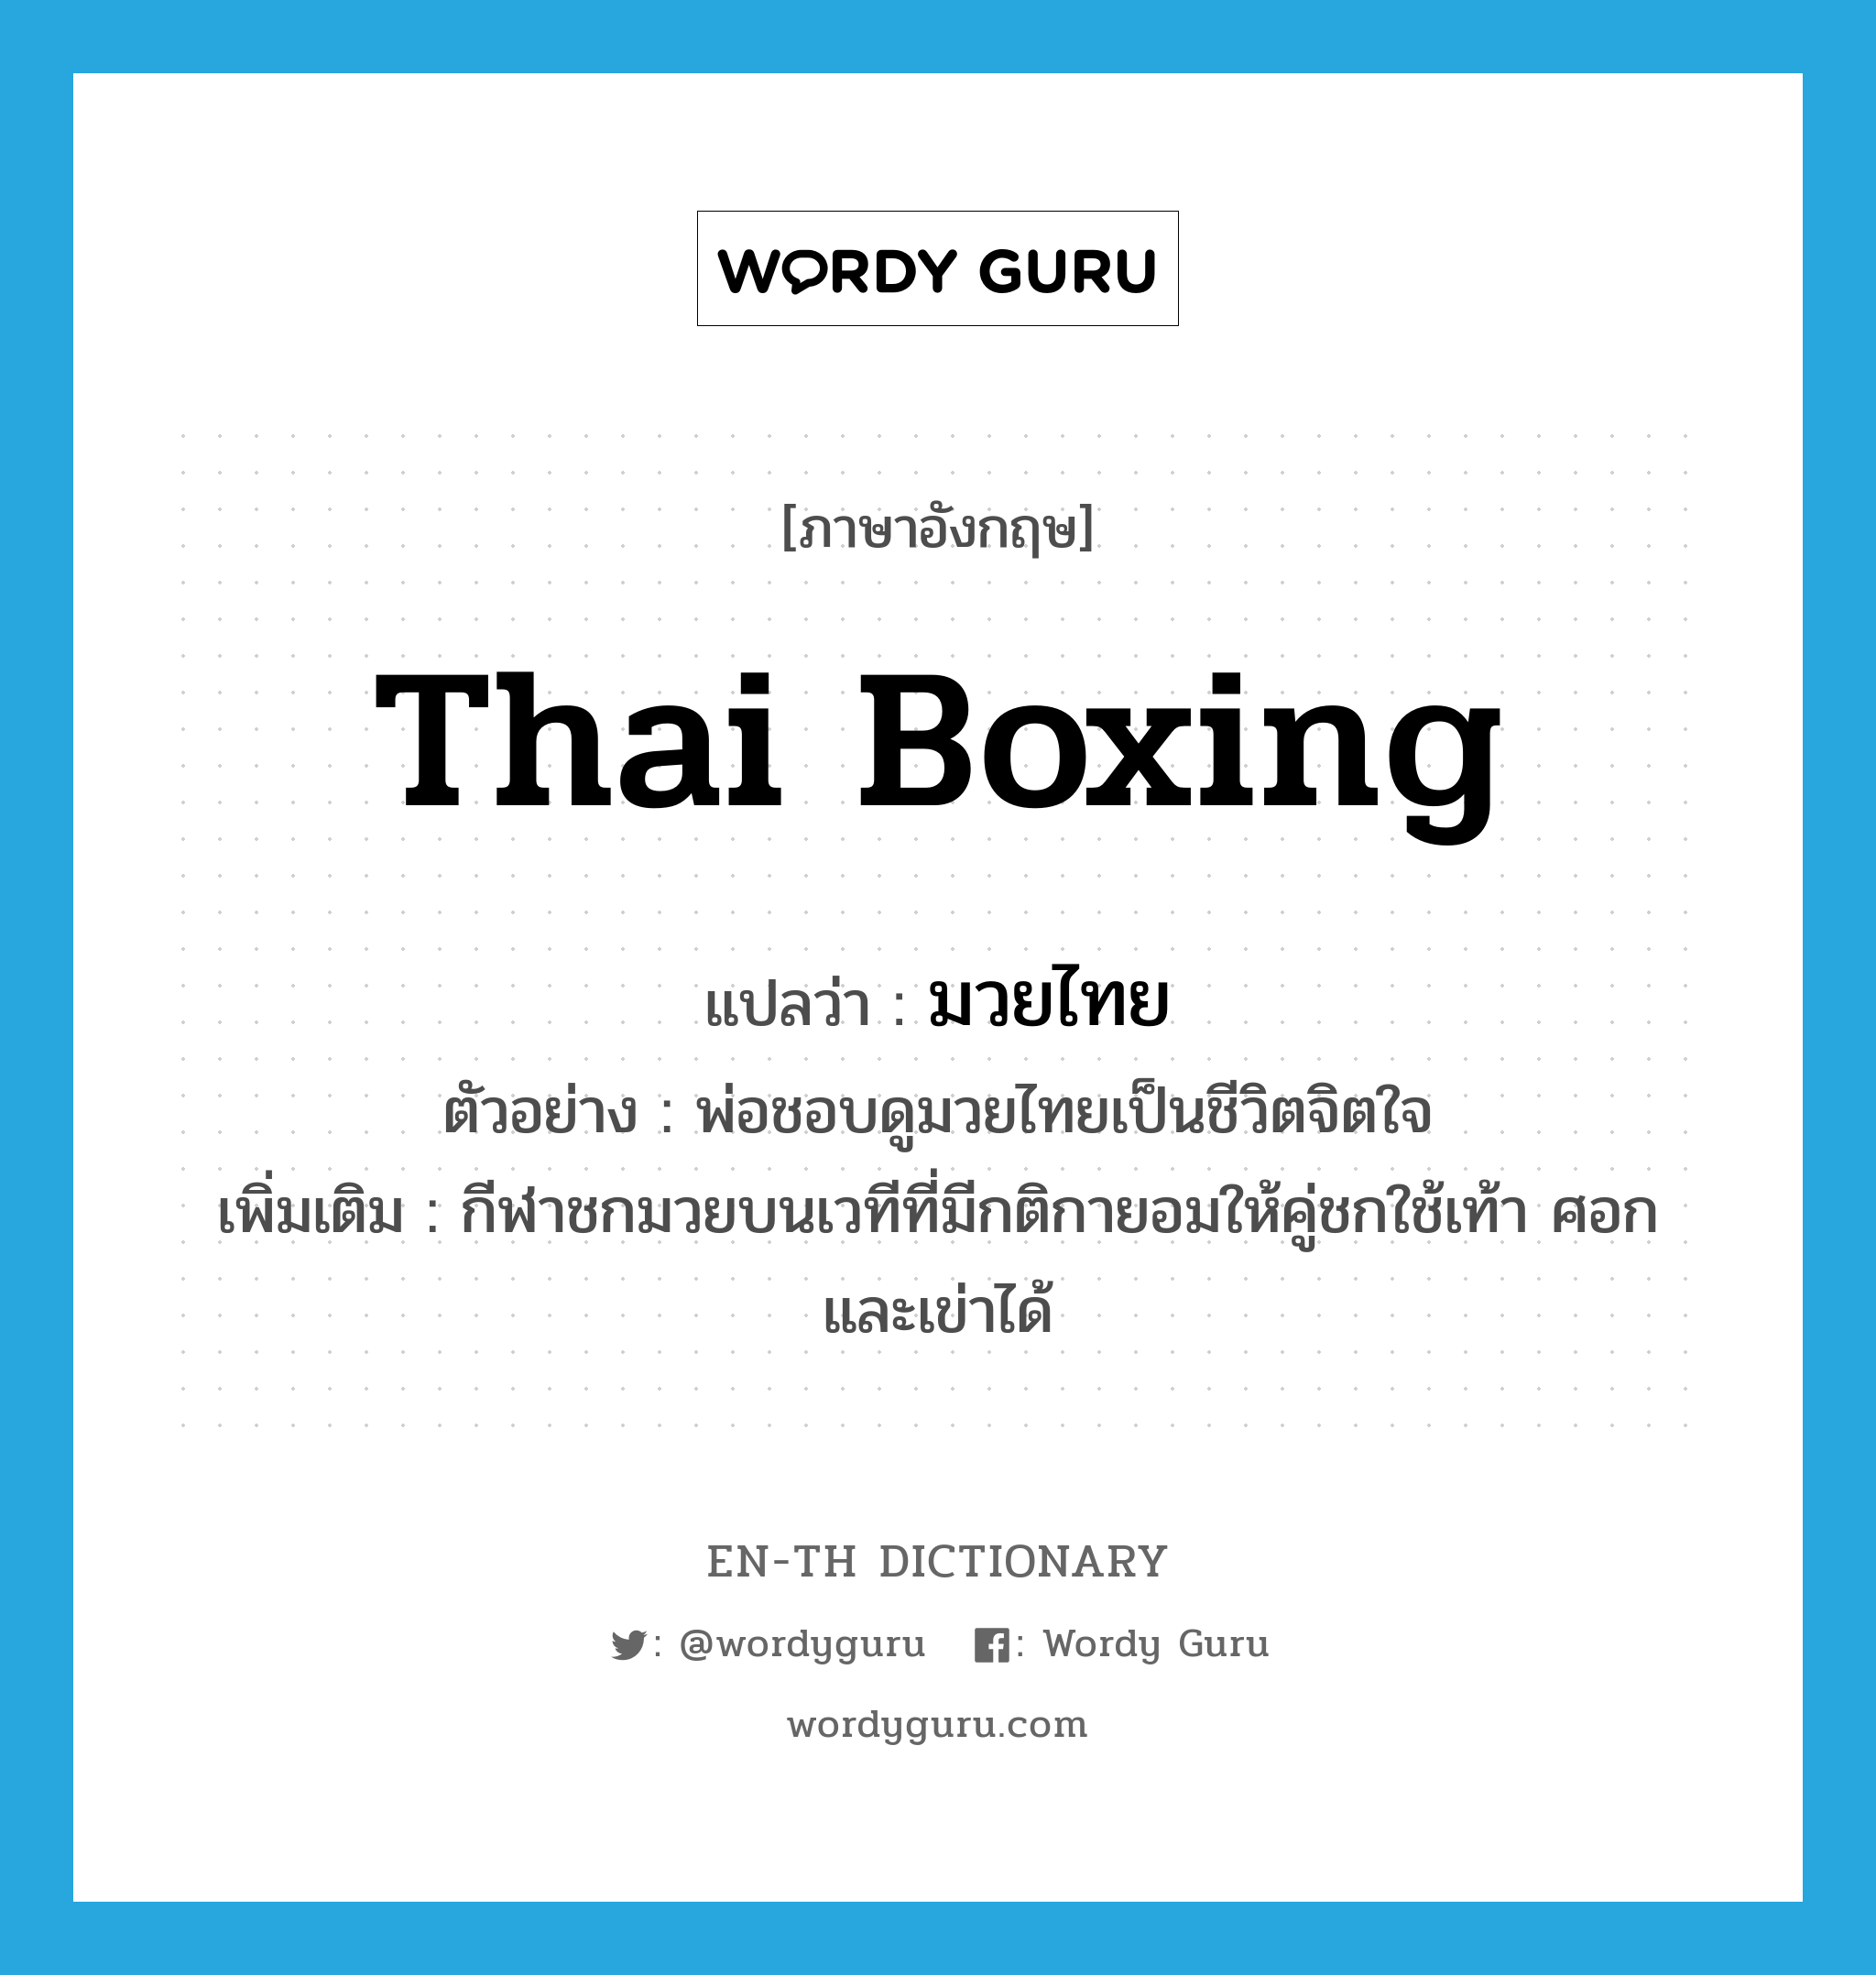 มวยไทย ภาษาอังกฤษ?, คำศัพท์ภาษาอังกฤษ มวยไทย แปลว่า Thai boxing ประเภท N ตัวอย่าง พ่อชอบดูมวยไทยเป็นชีวิตจิตใจ เพิ่มเติม กีฬาชกมวยบนเวทีที่มีกติกายอมให้คู่ชกใช้เท้า ศอก และเข่าได้ หมวด N